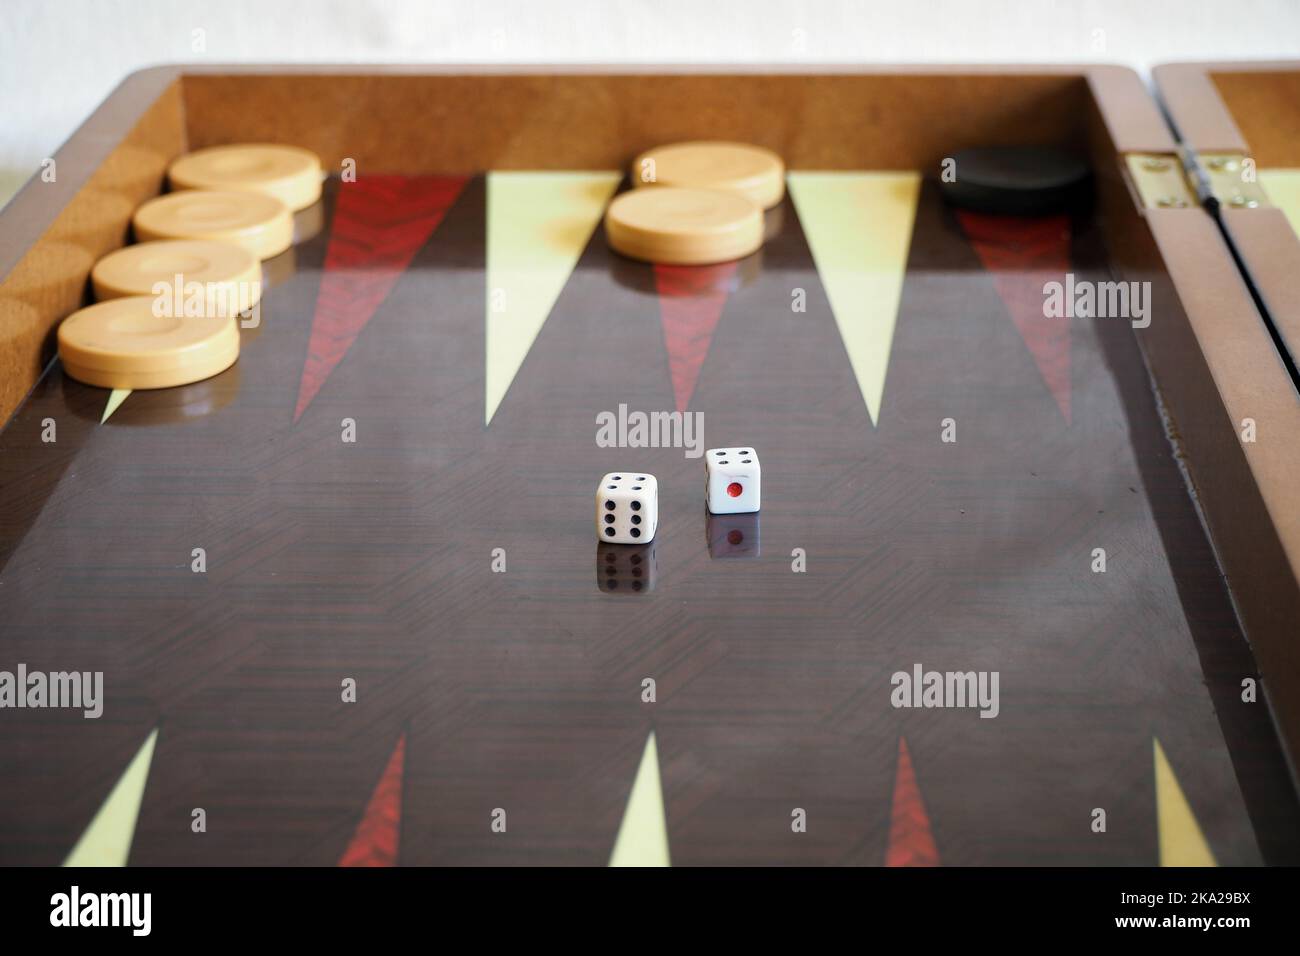 Würfeln Sie in doppelter Voursposition auf dem Backgammon-Spielbrett. Konzentriert sich auf die Würfel. Stockfoto